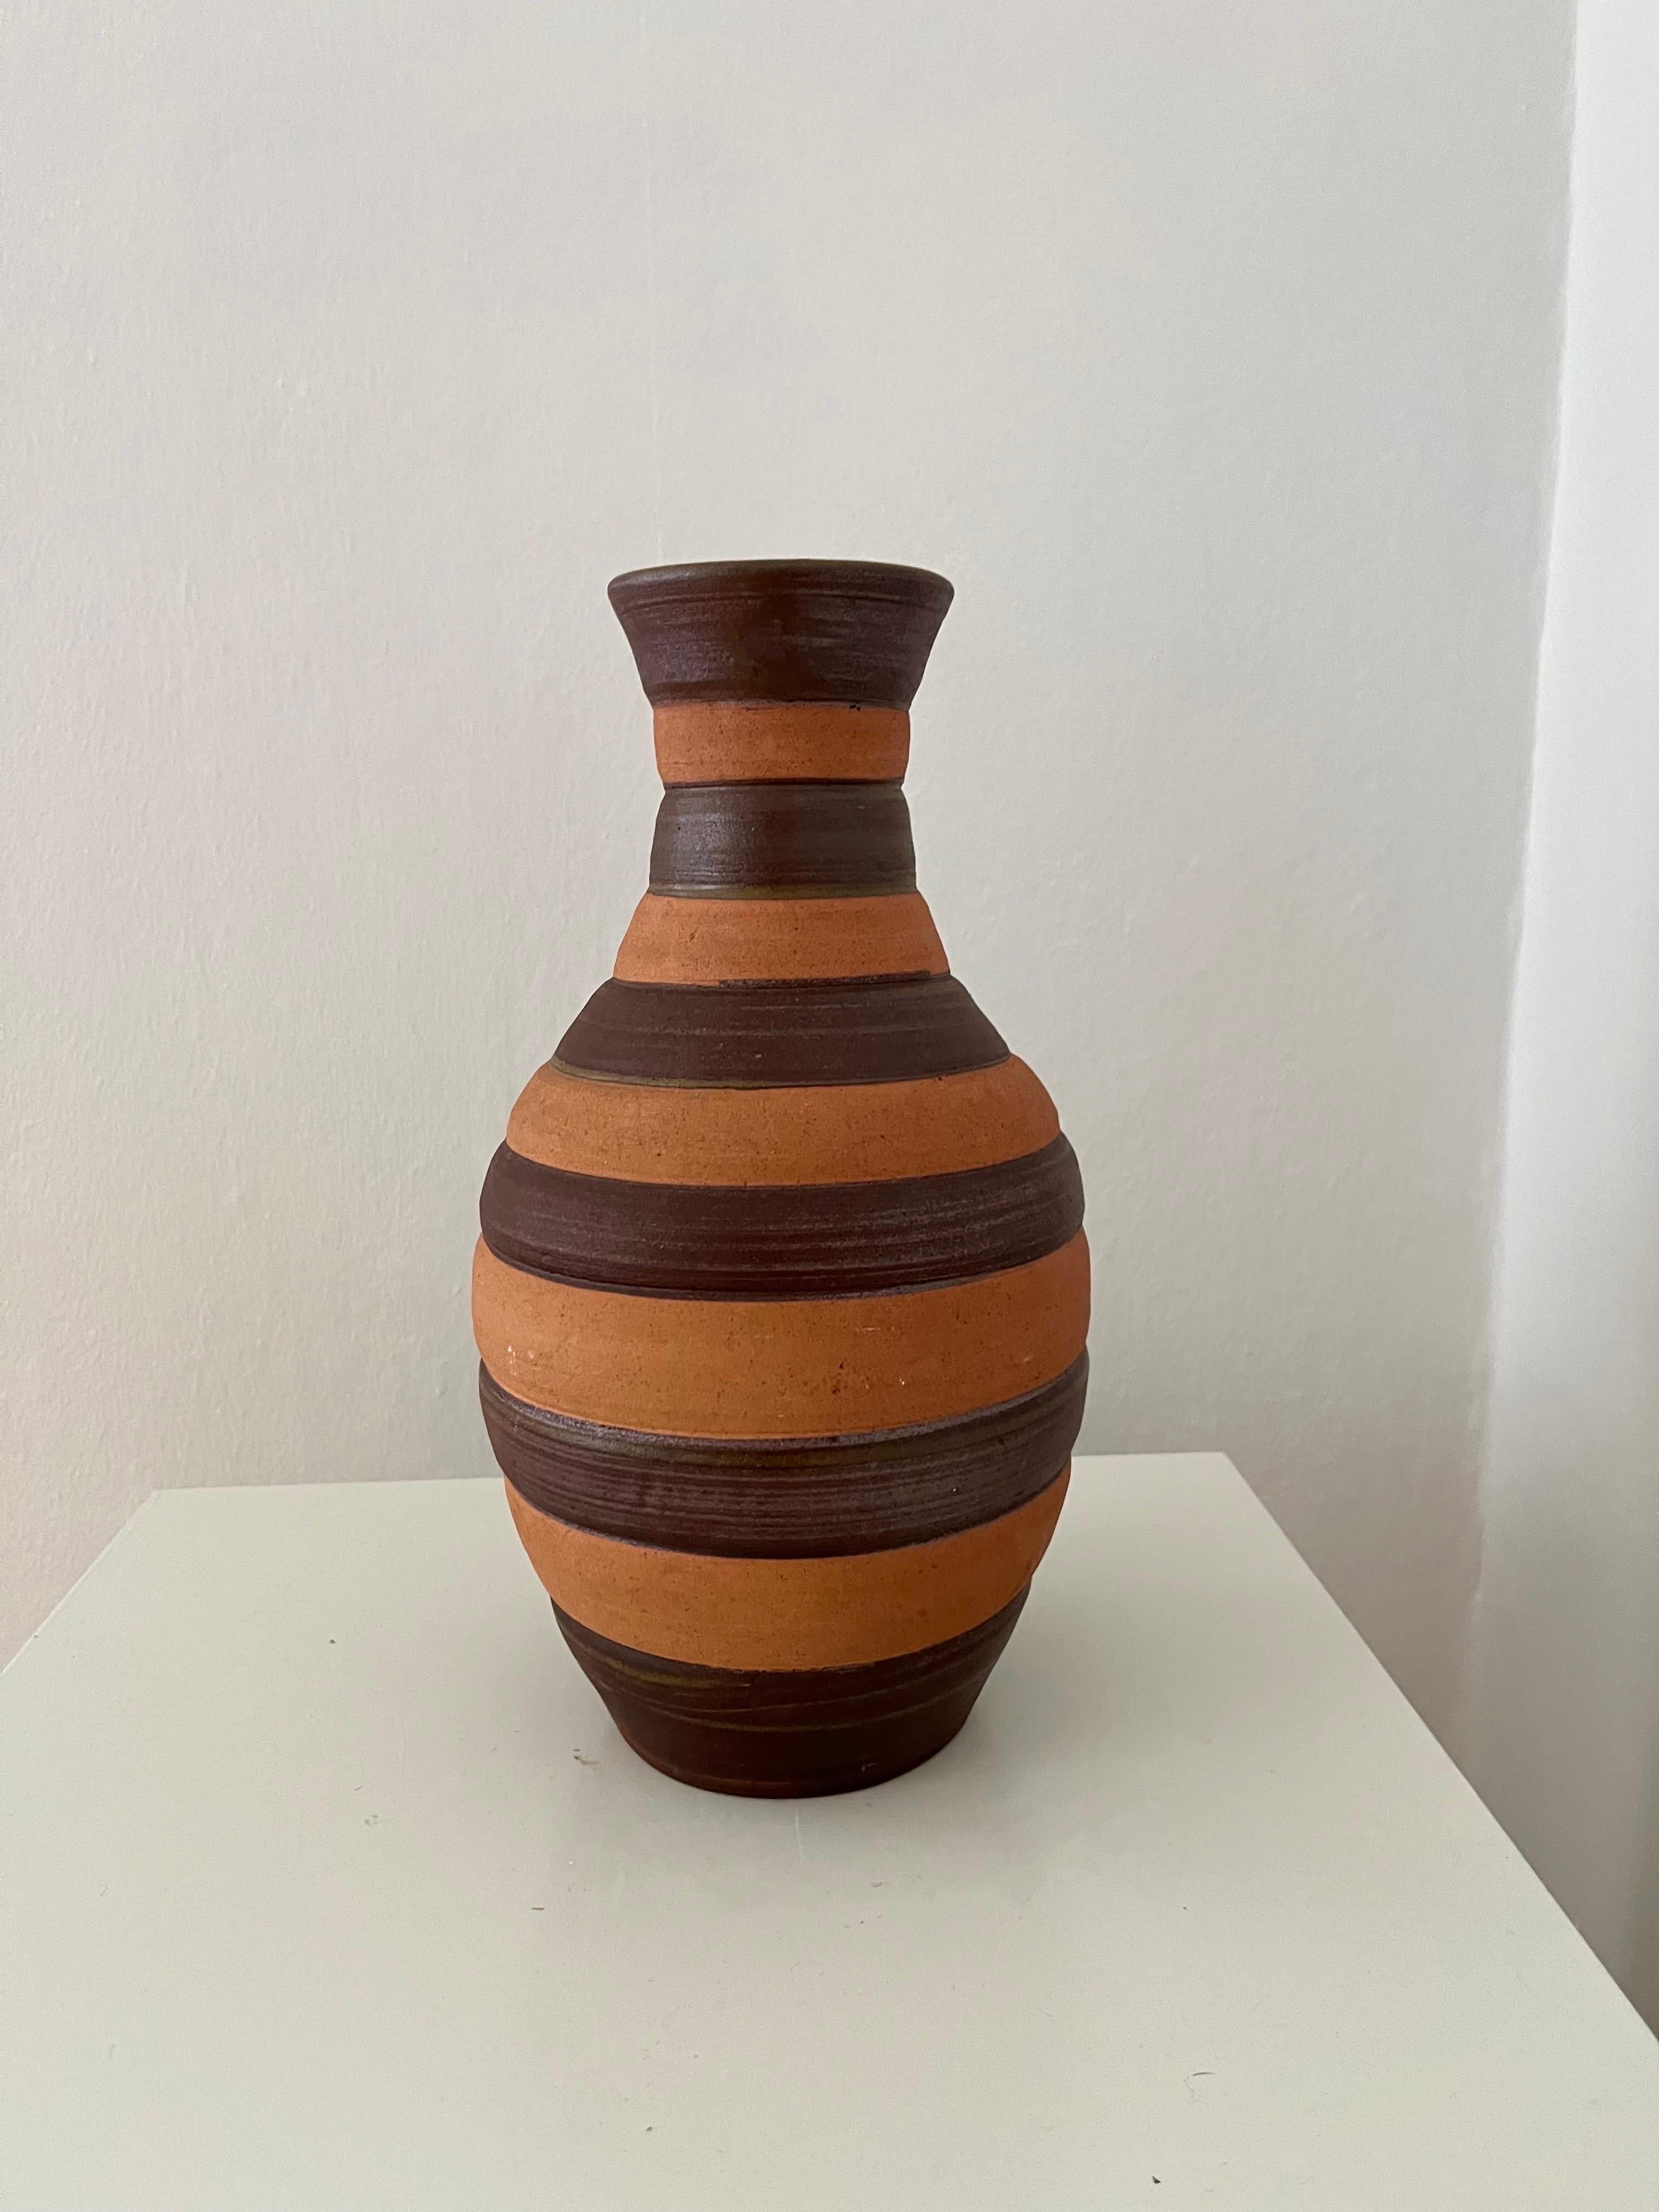 Vase en céramique suédoise fait à la main dans les années 1960. Vase en grès tourné à la main par l'artiste céramiste suédois Sven Bohlin (1921-1996) en deux nuances de brun réalisant un décor rayé. Le brun le plus clair est mat, le brun le plus